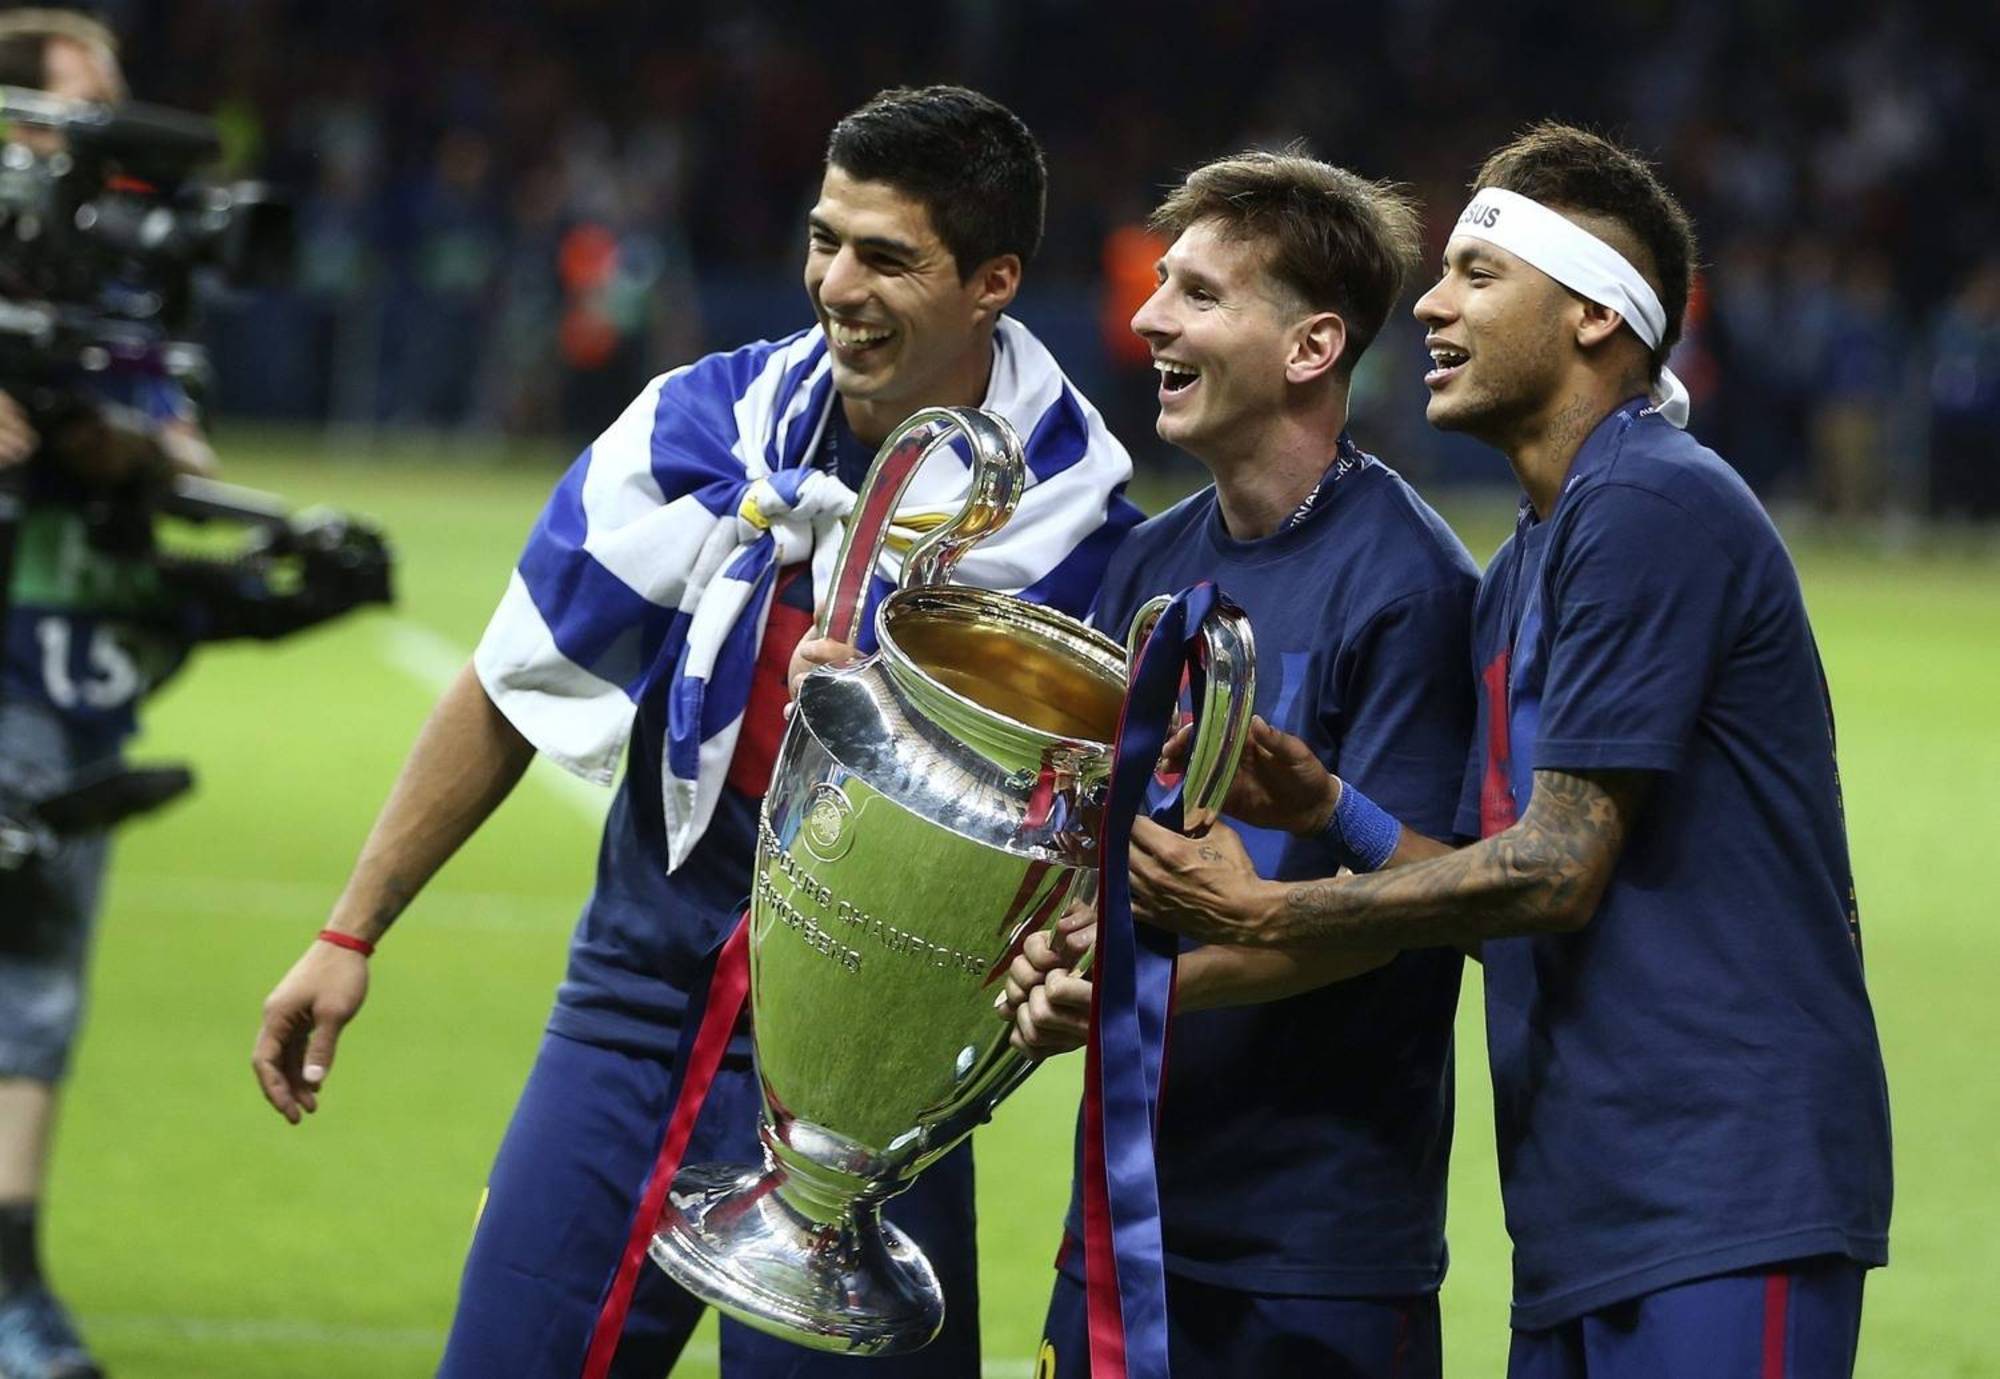 Com Messi, Neymar vira o favorito ao prêmio de melhor do mundo? - Fotos -  R7 Futebol